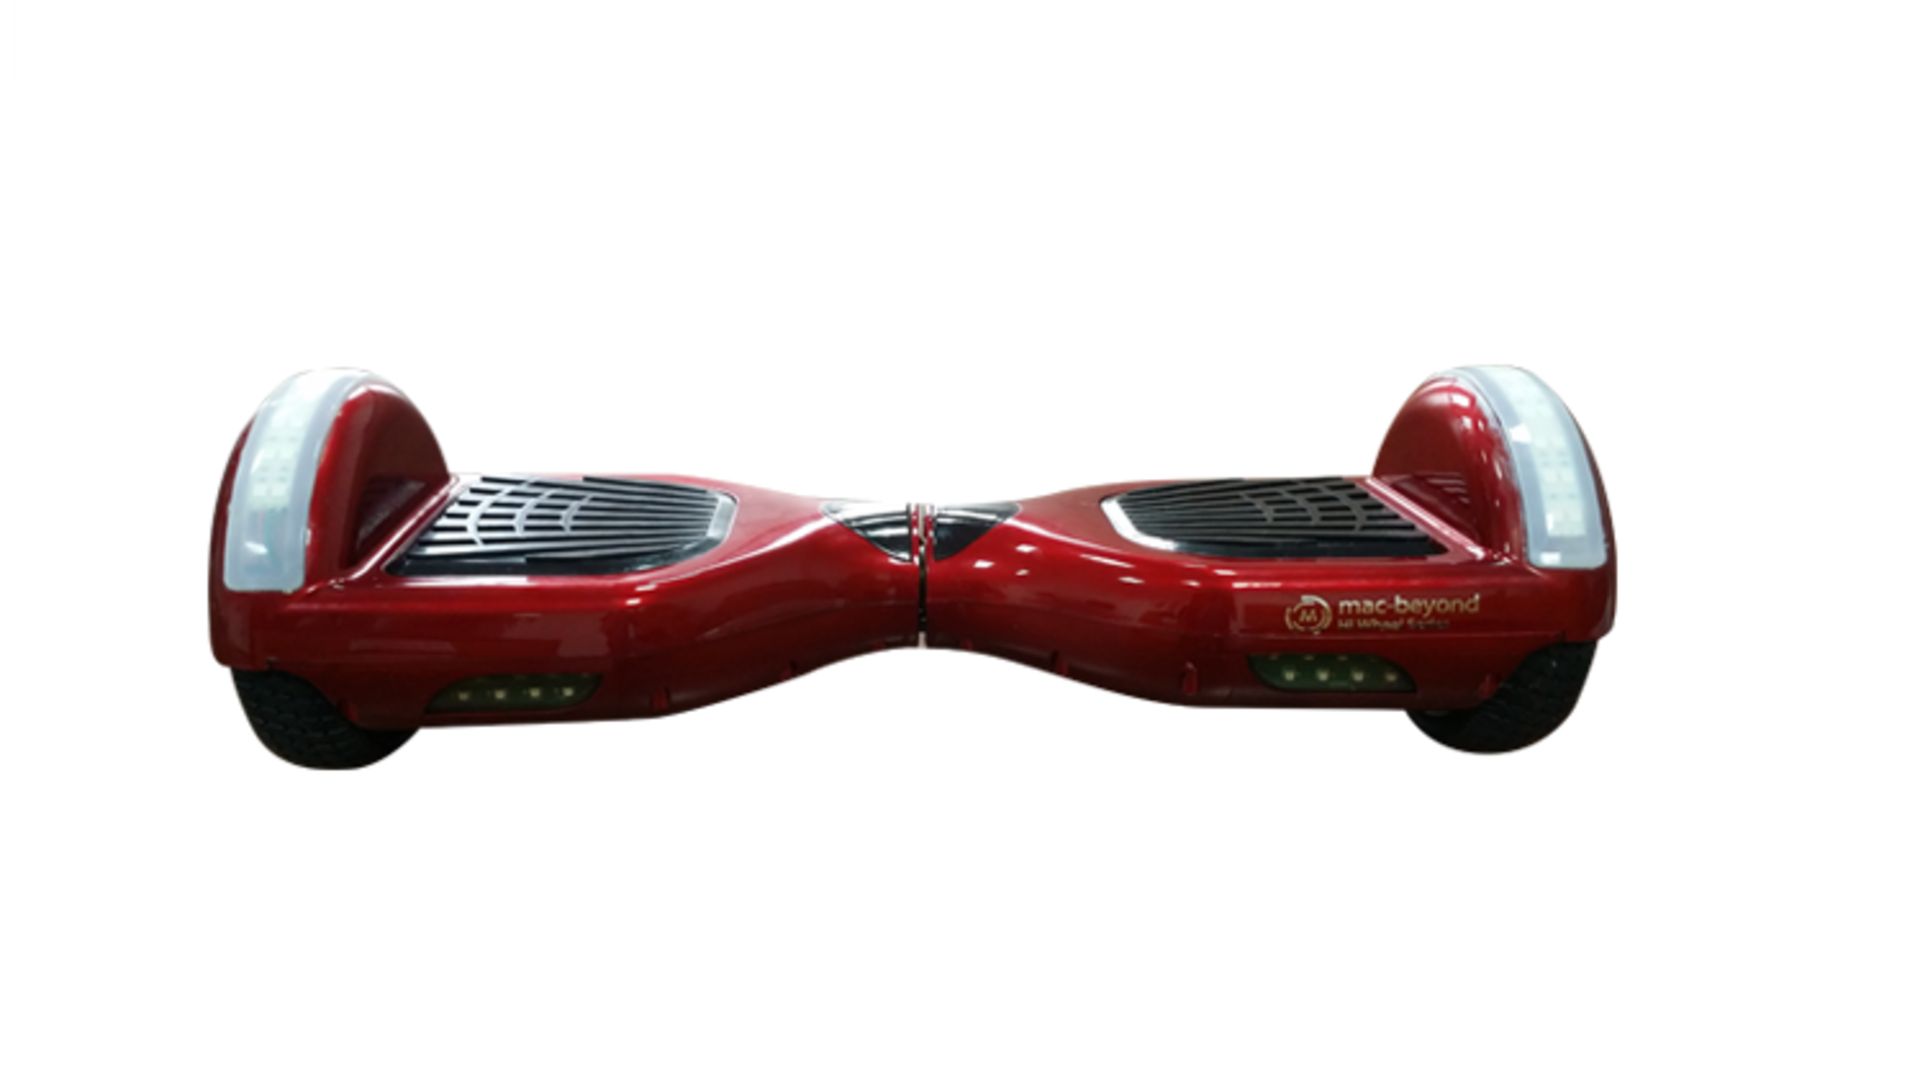 macbeyond x Hi wheel Series, Red Modelæ R2 LED (6.5 inch wheels, Best Seller) Smart personal - Image 2 of 8